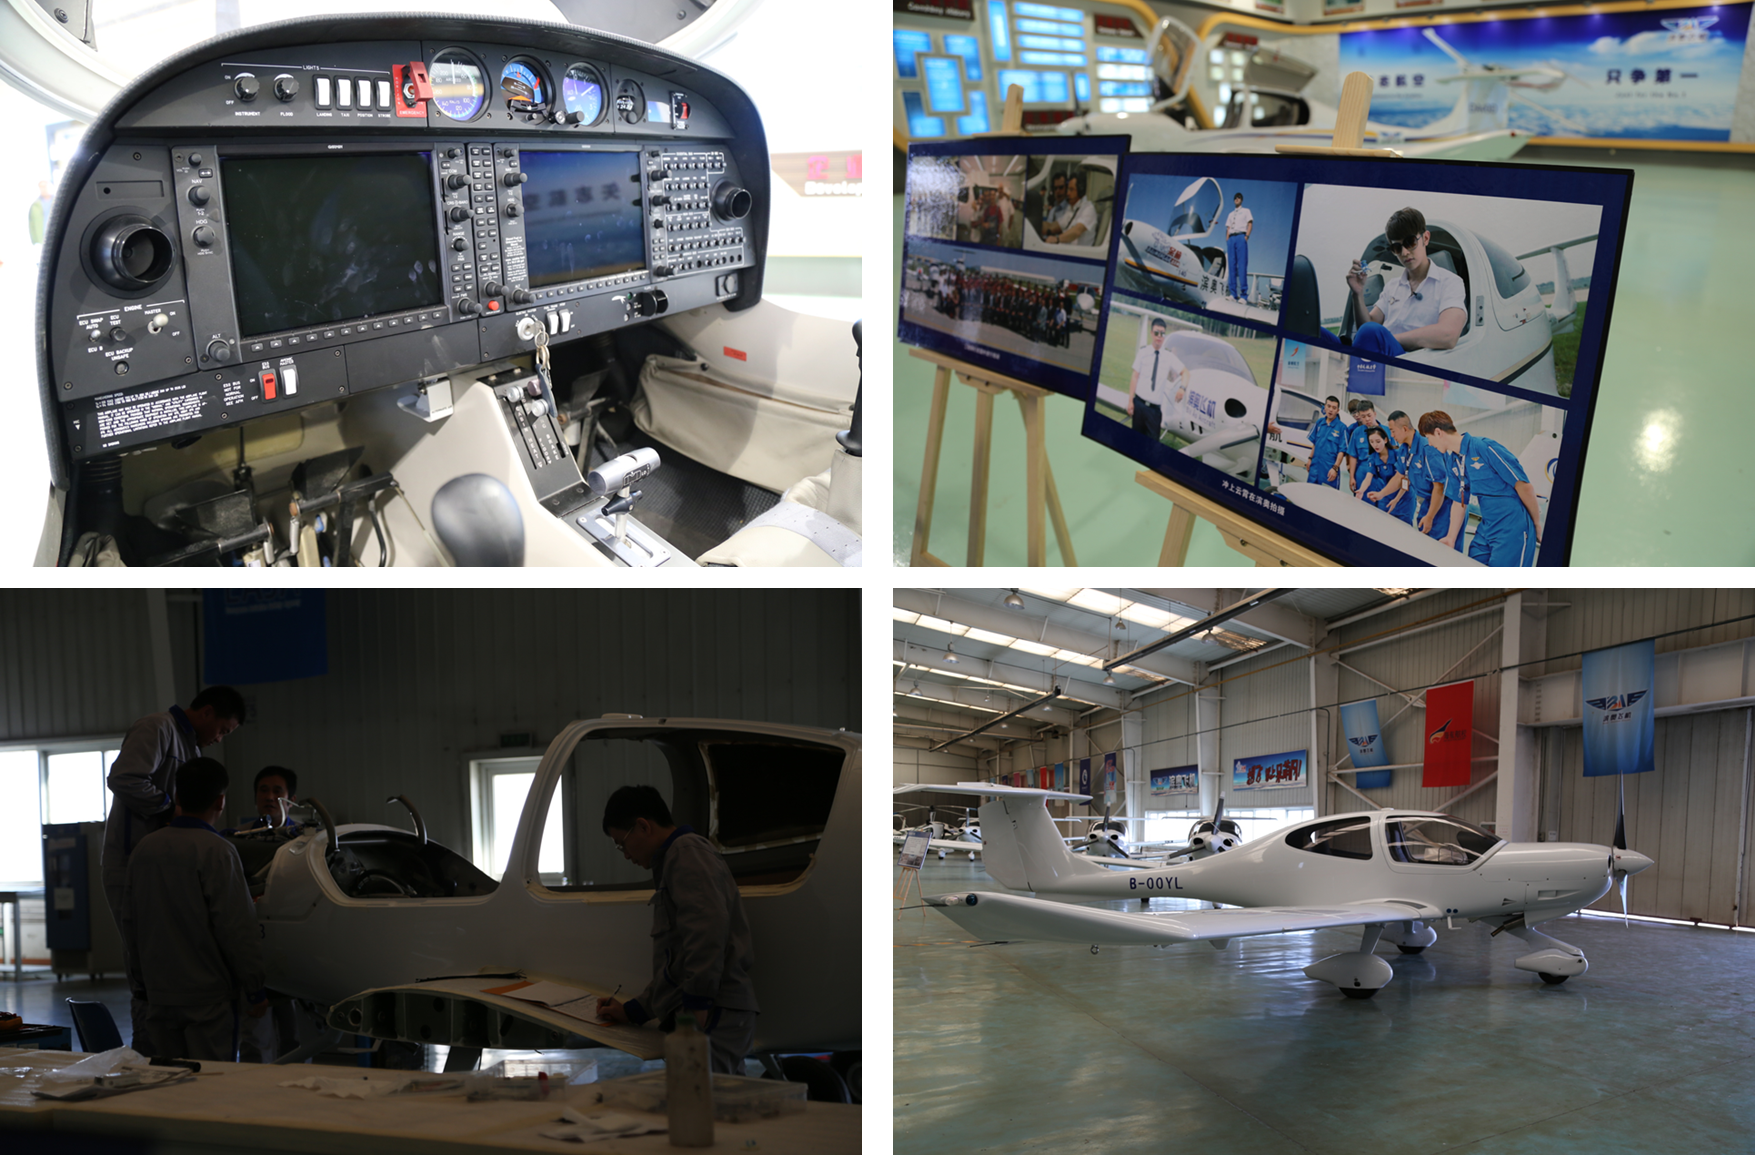 滨奥飞机制造有限公司位于滨州市沾化区,是国内唯一中外合资生产全